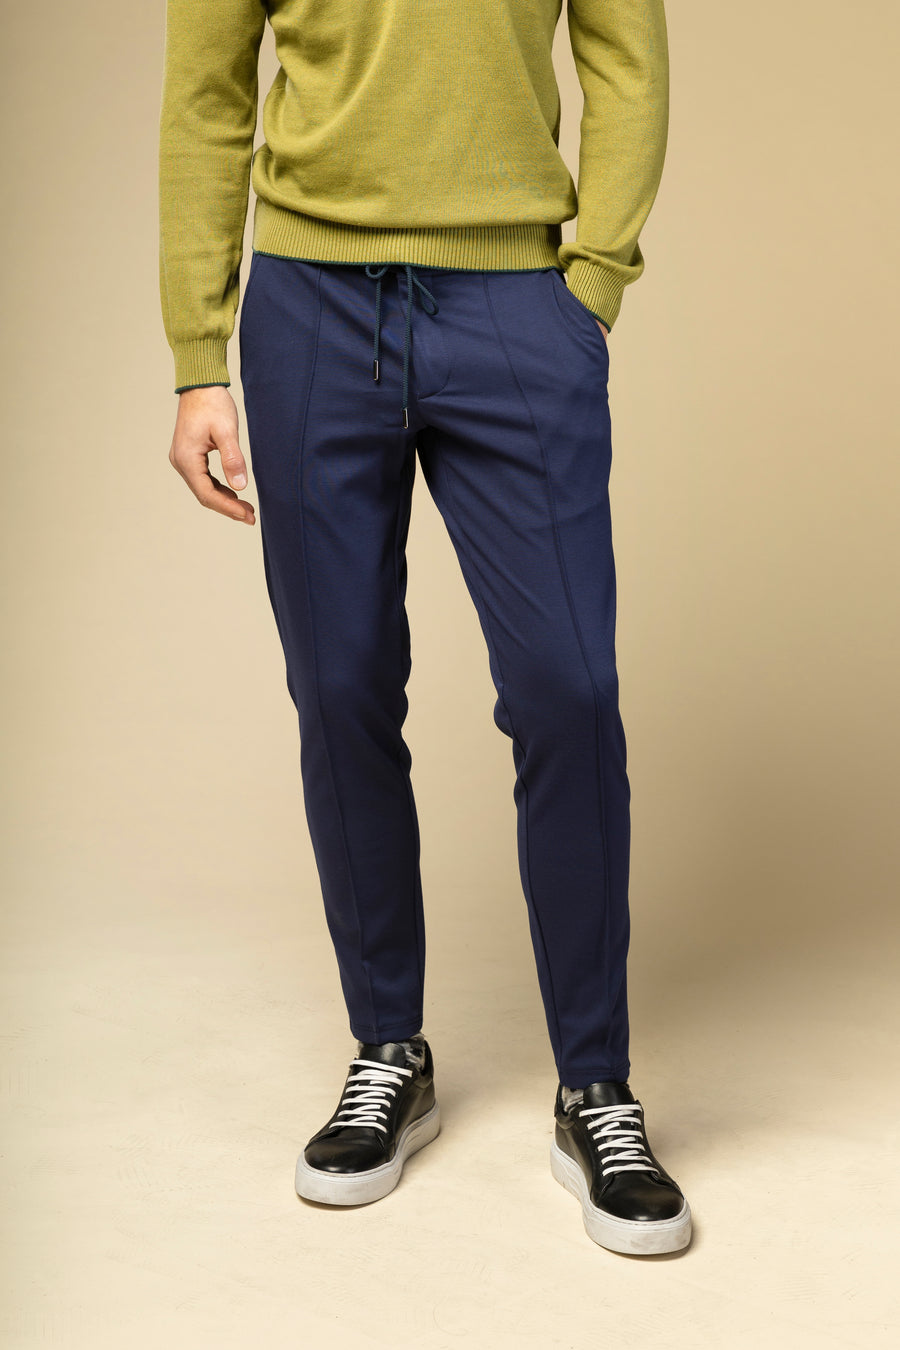 Pantalon confort line blue